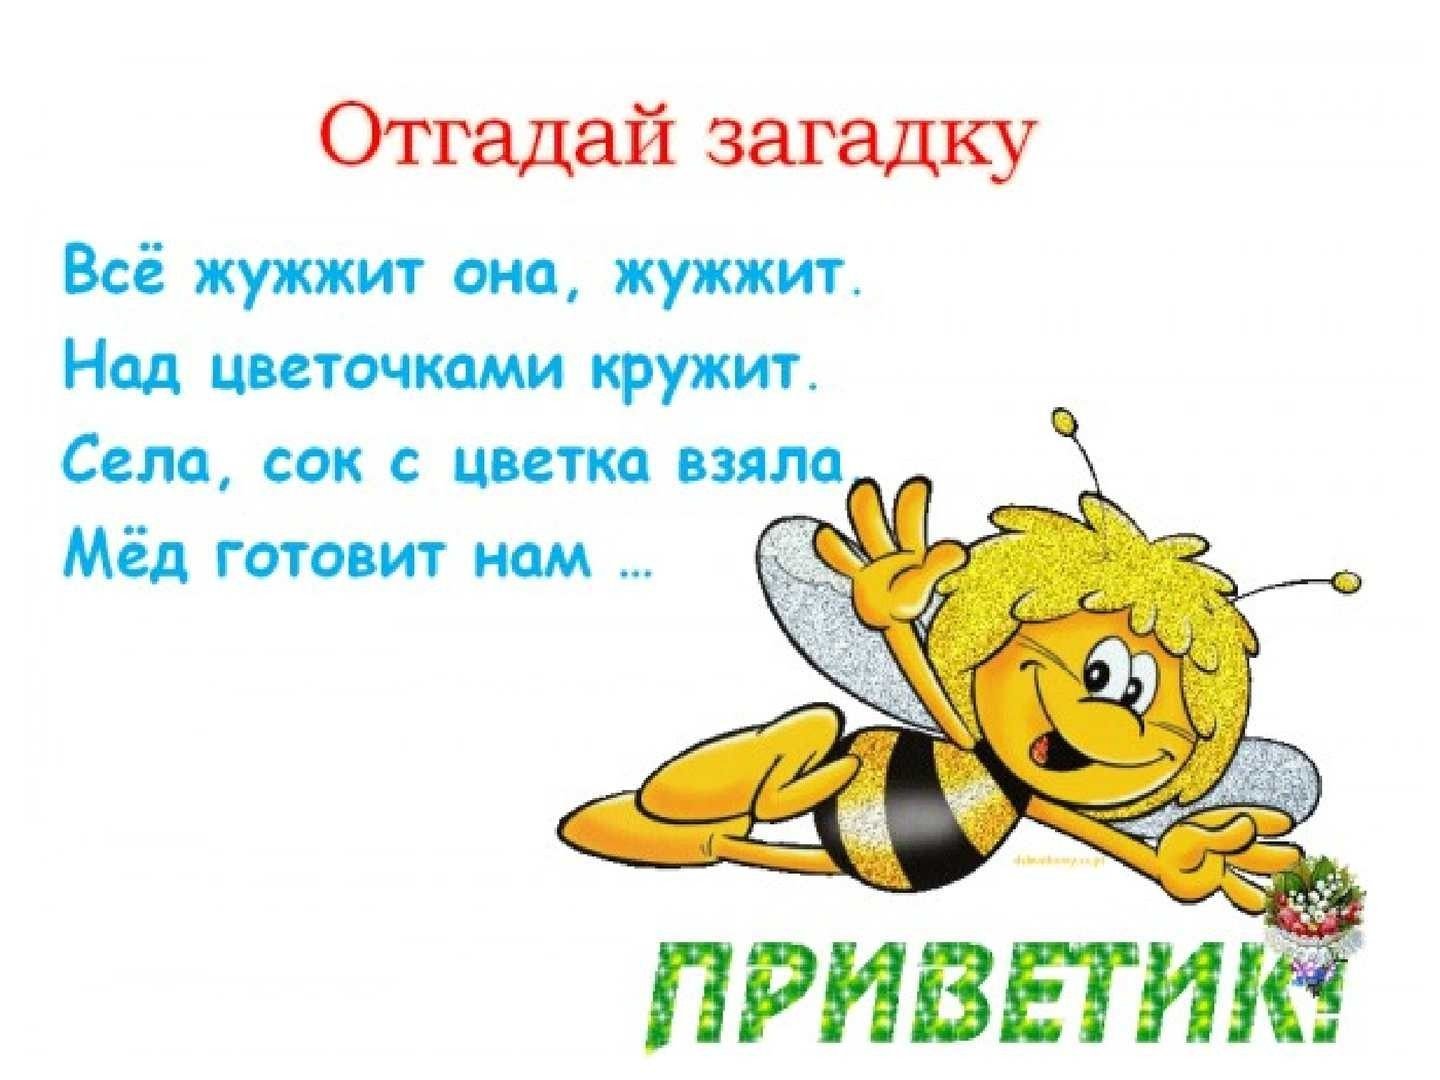 Жужжание 1. Загадка про пчелу. Загадка про пчелу для детей. Стих про пчелу. Детские загадки про пчел.